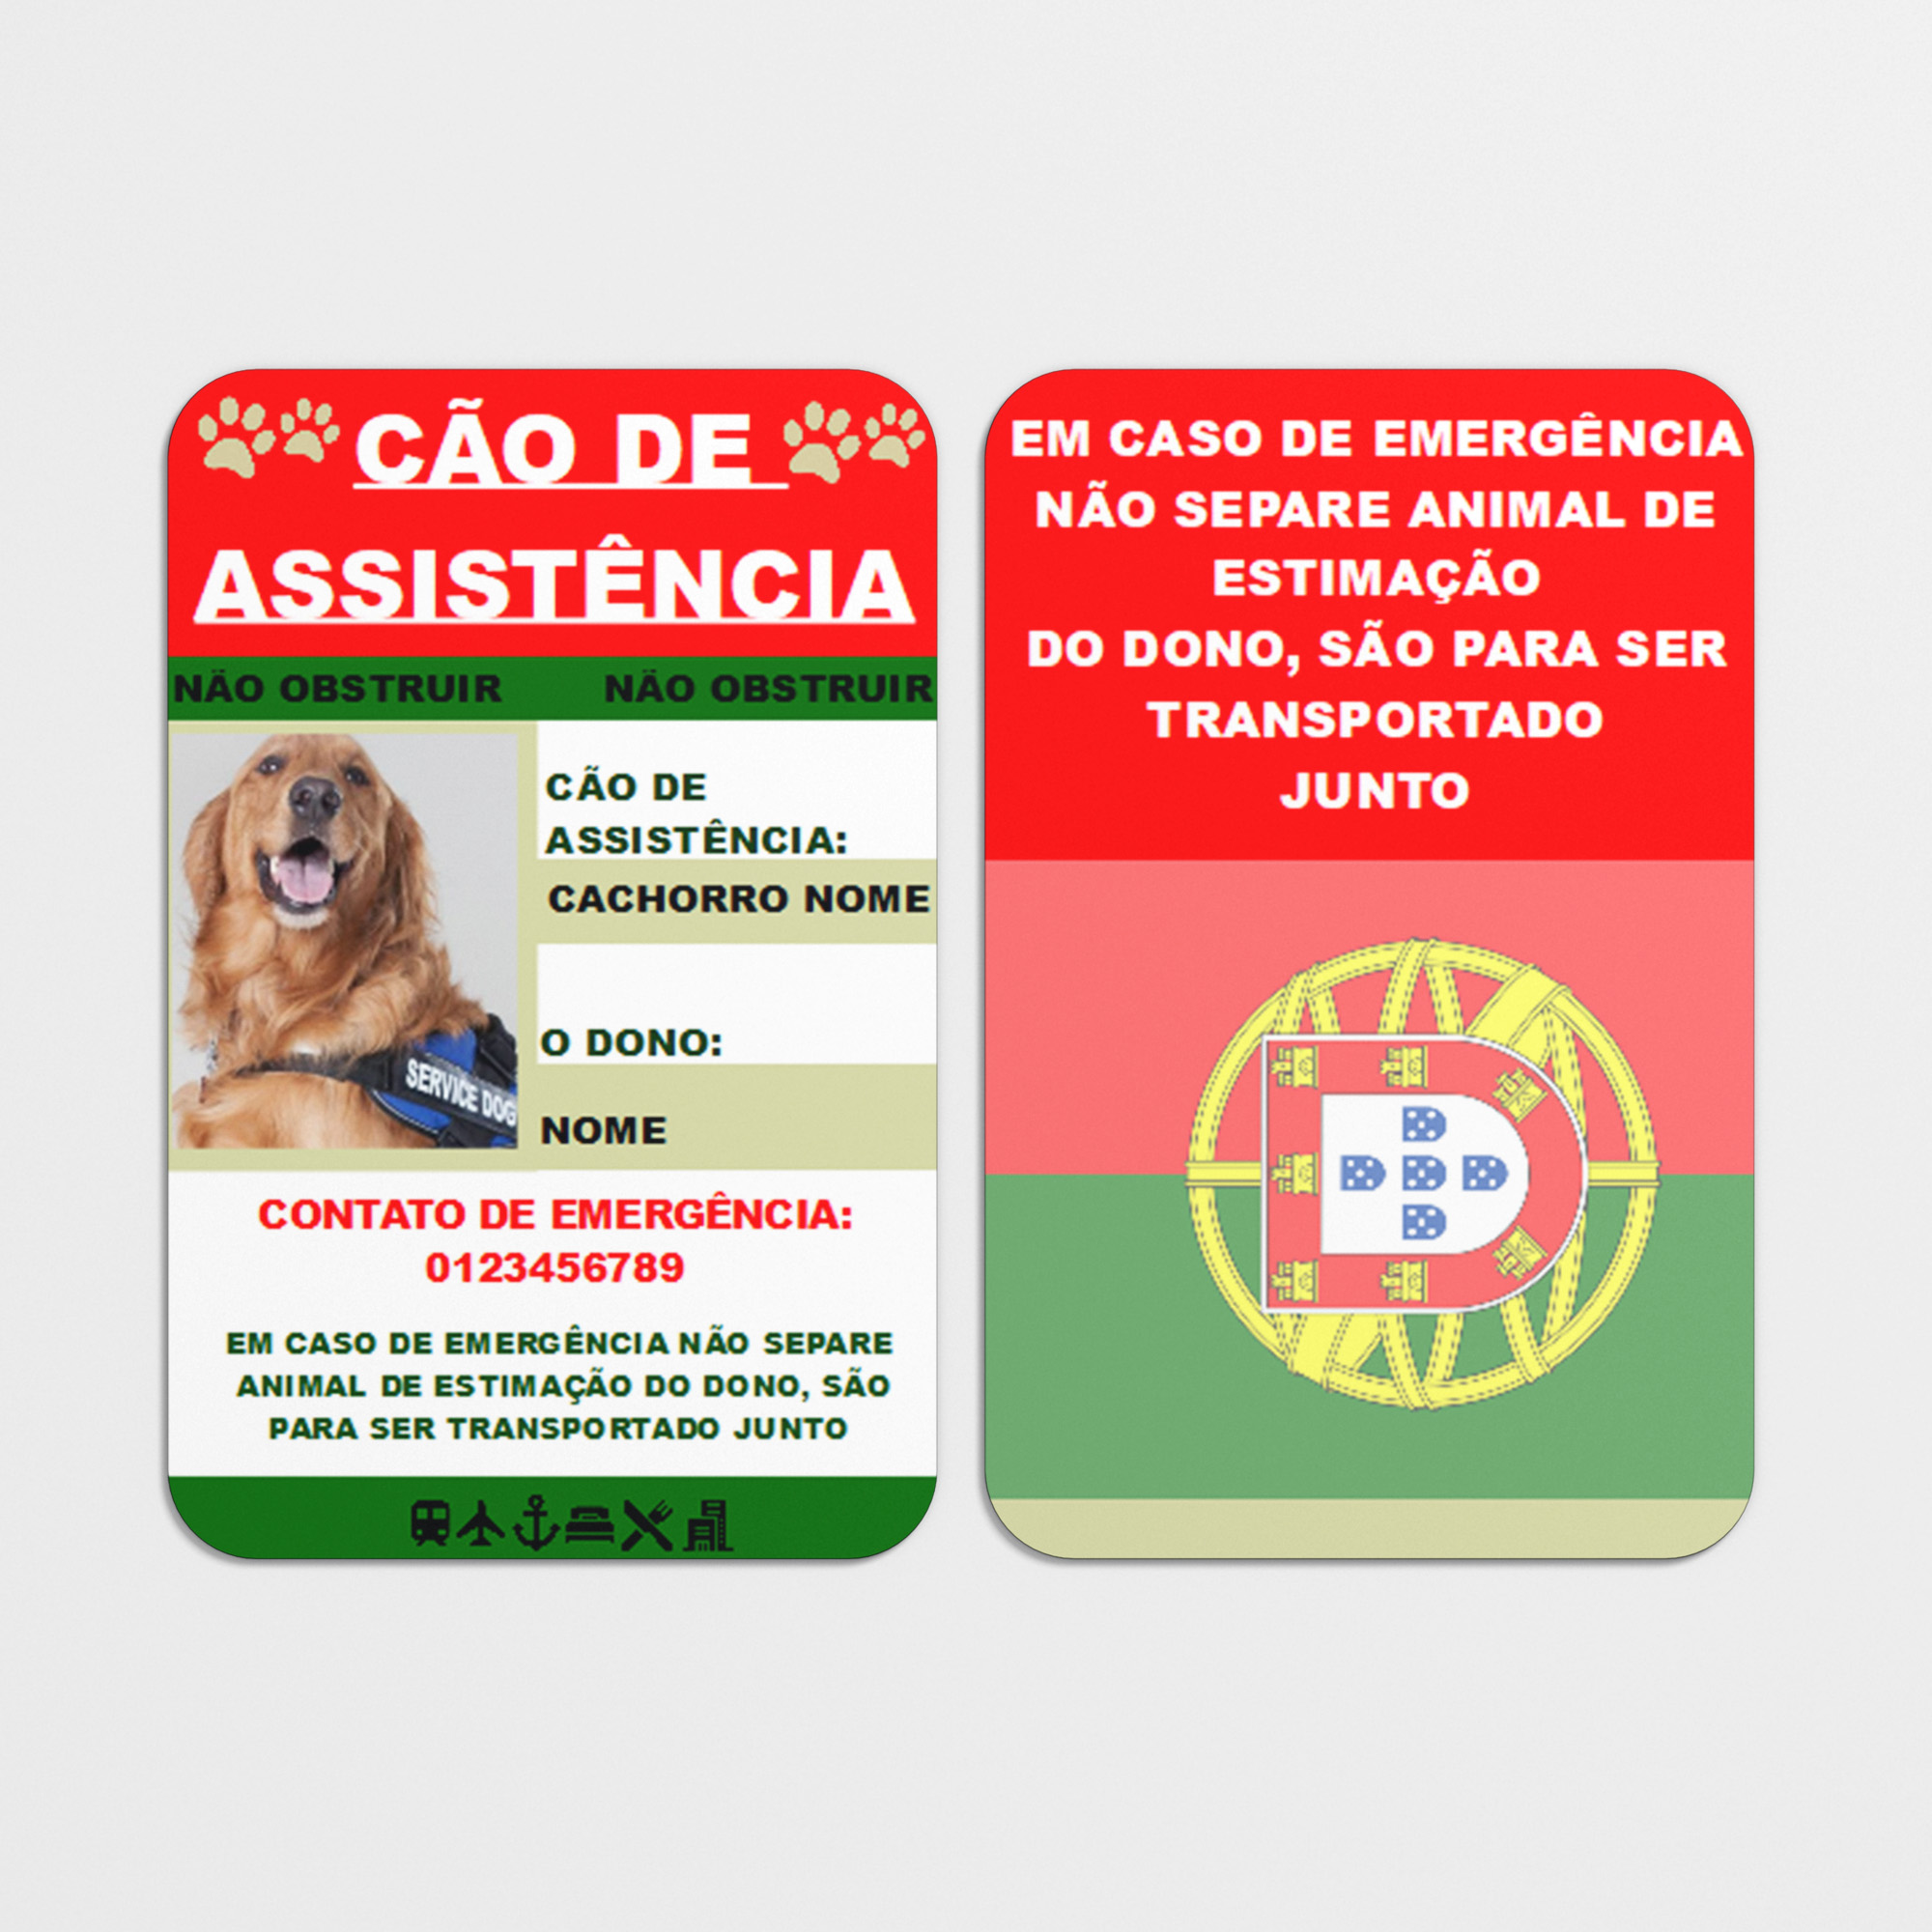 Assistance Dog Card in Portuguese - Cartão Cão de Assistência